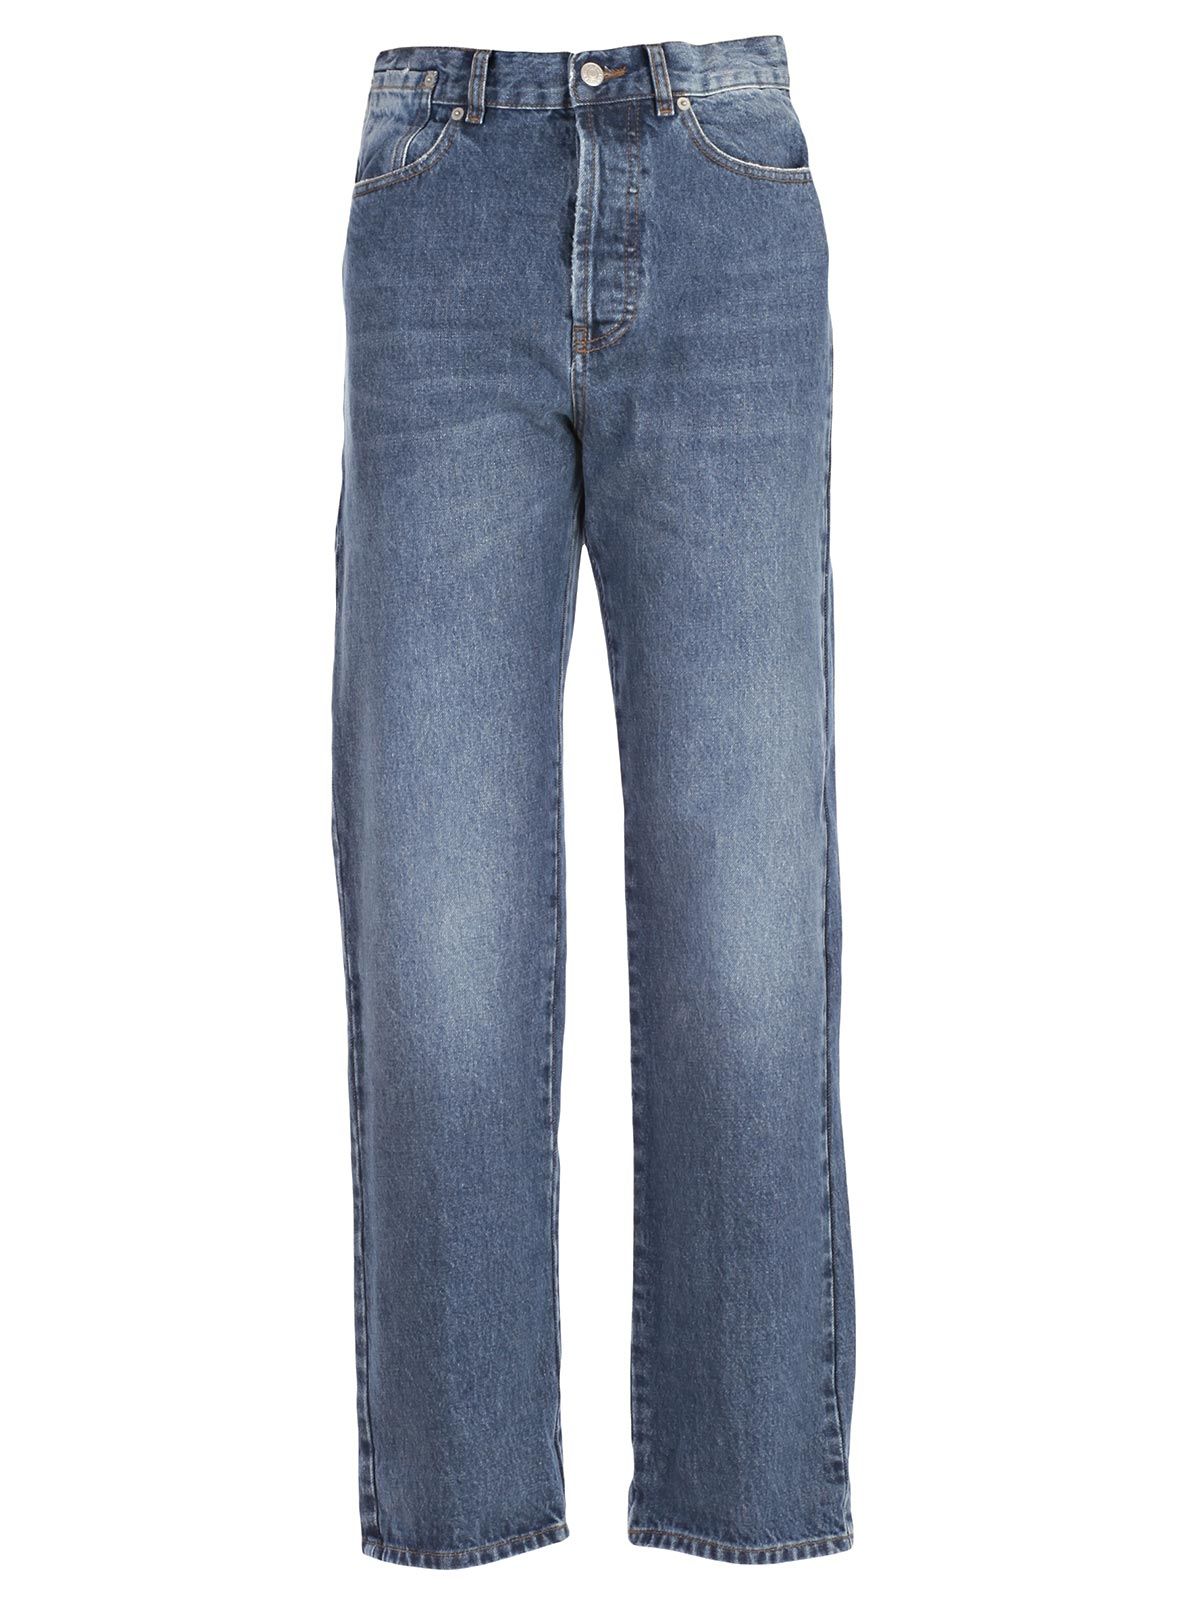 Dries Van Noten - Dries Van Noten Jeans - Blue, Women's Jeans | Italist